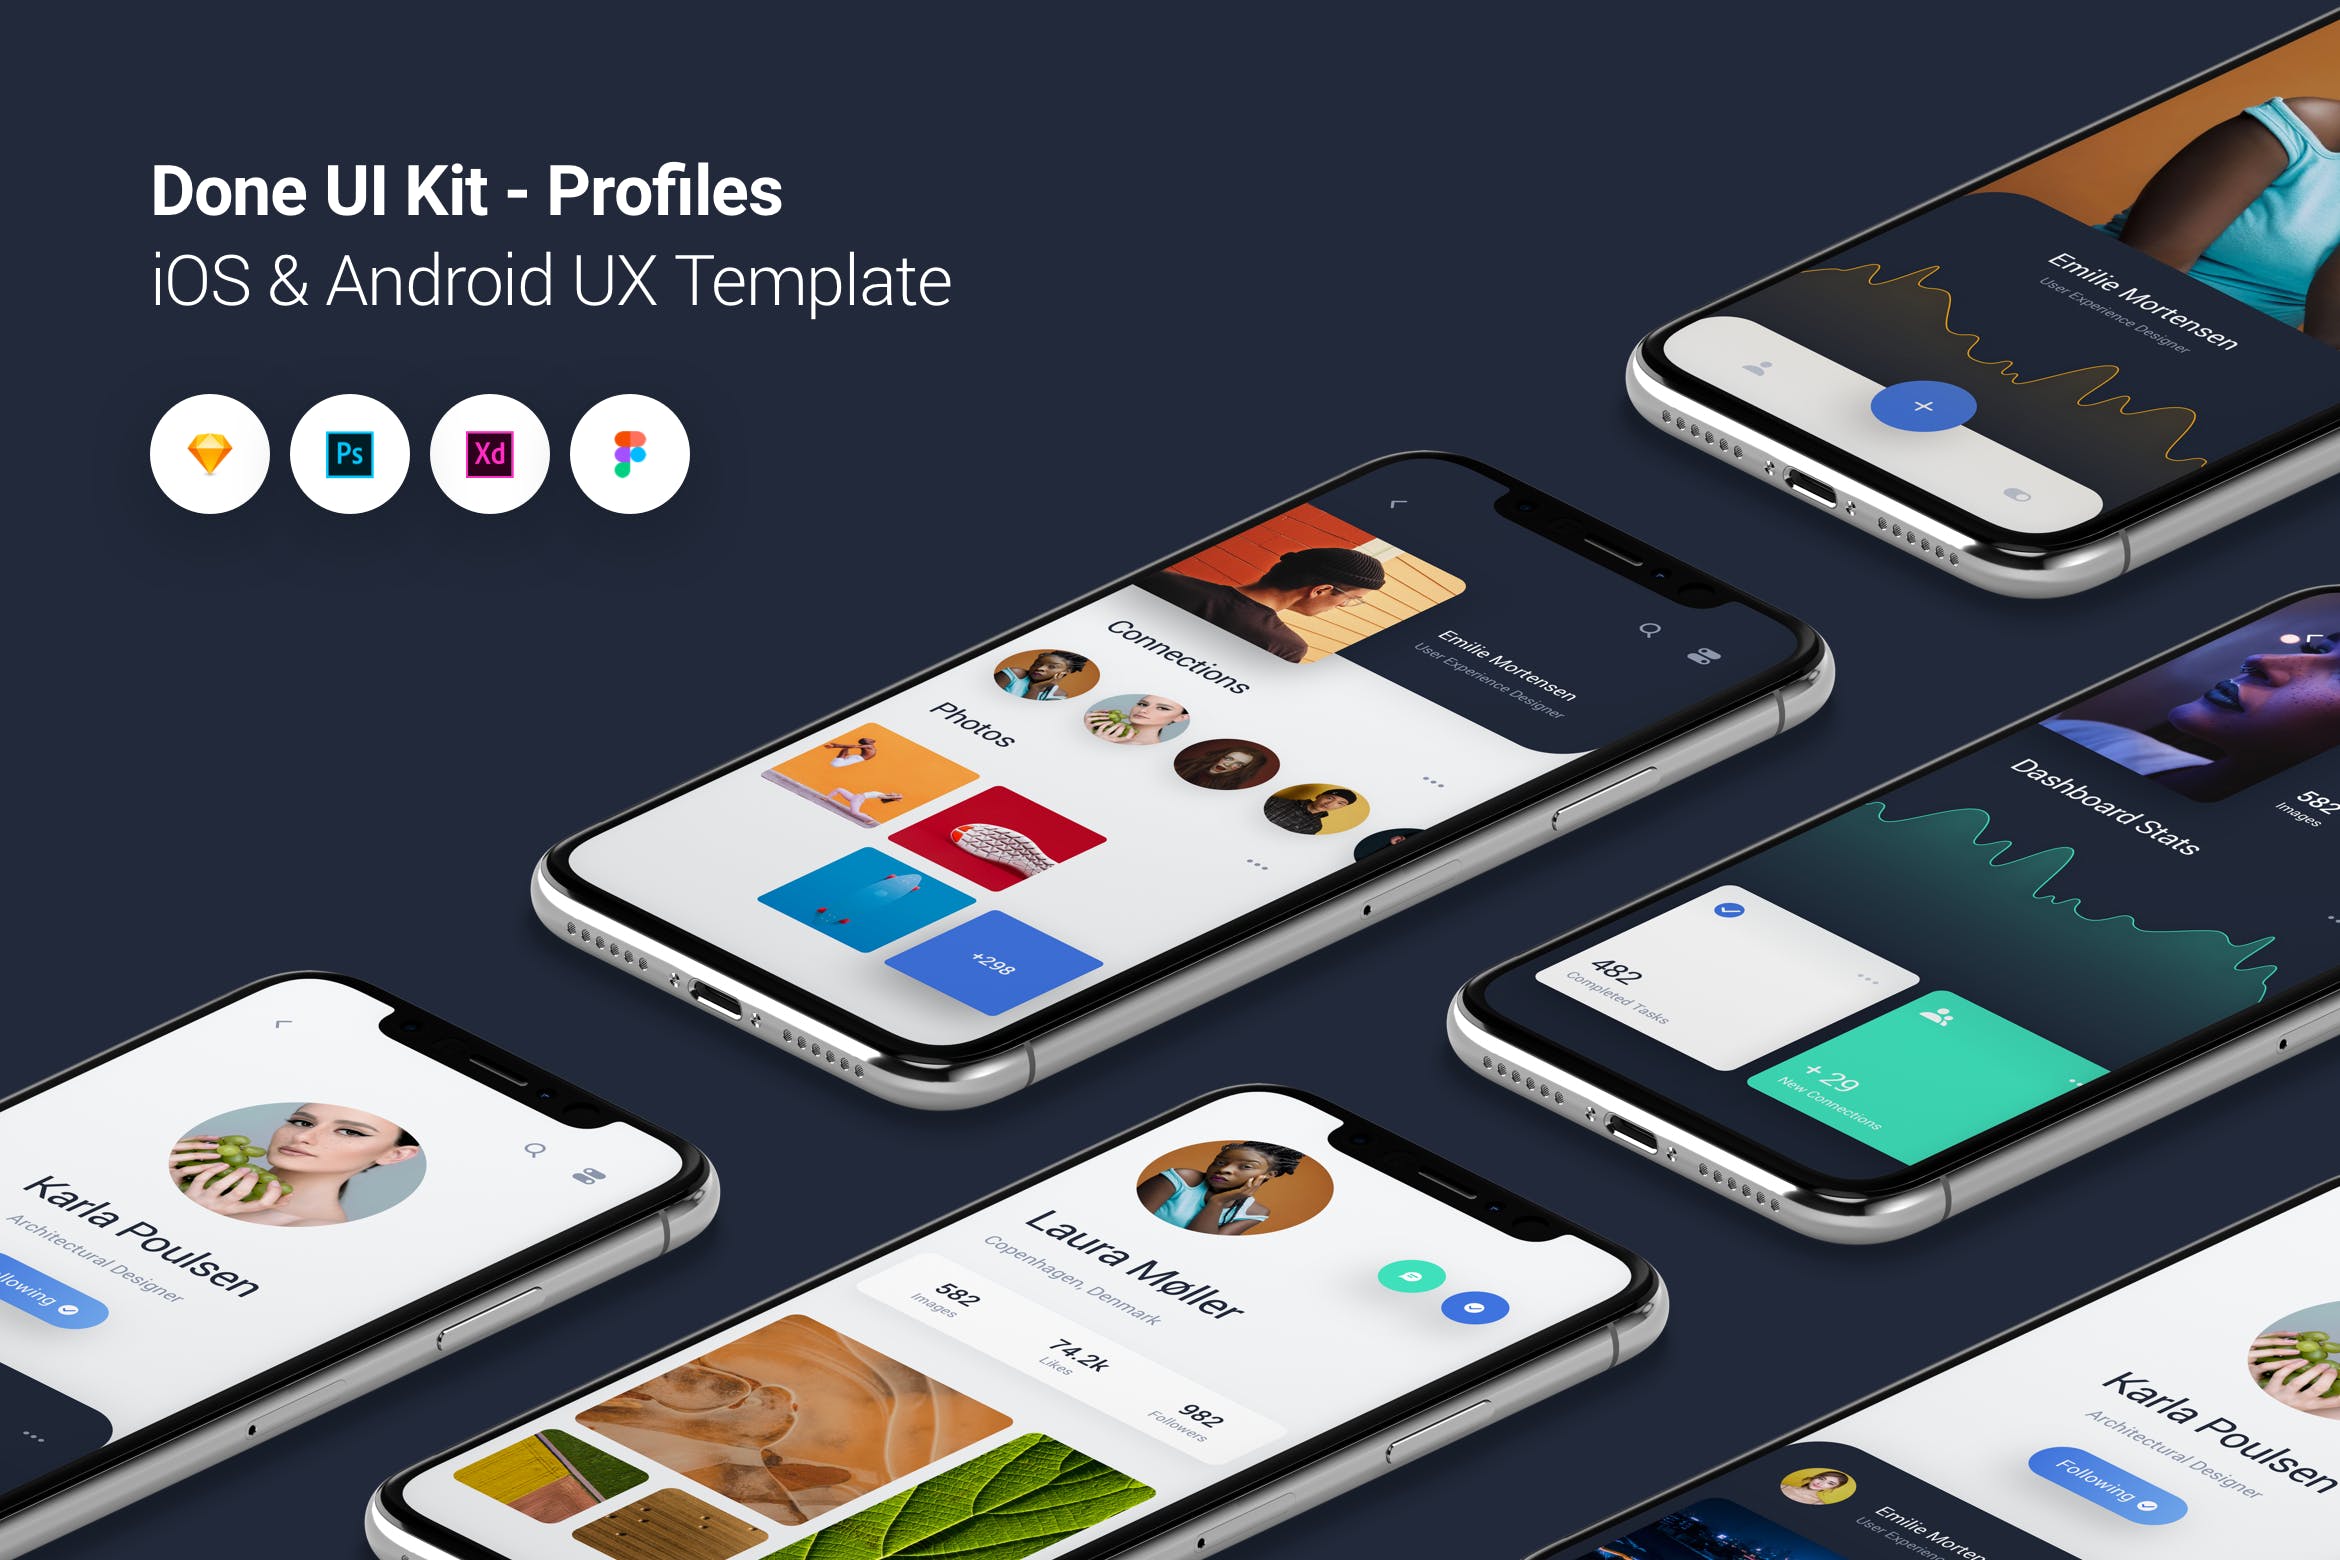 作品展示类型iOS/Android平台APP应用UI/UX设计模板 Profiles – Done UI Kit iOS & Android UX Template插图